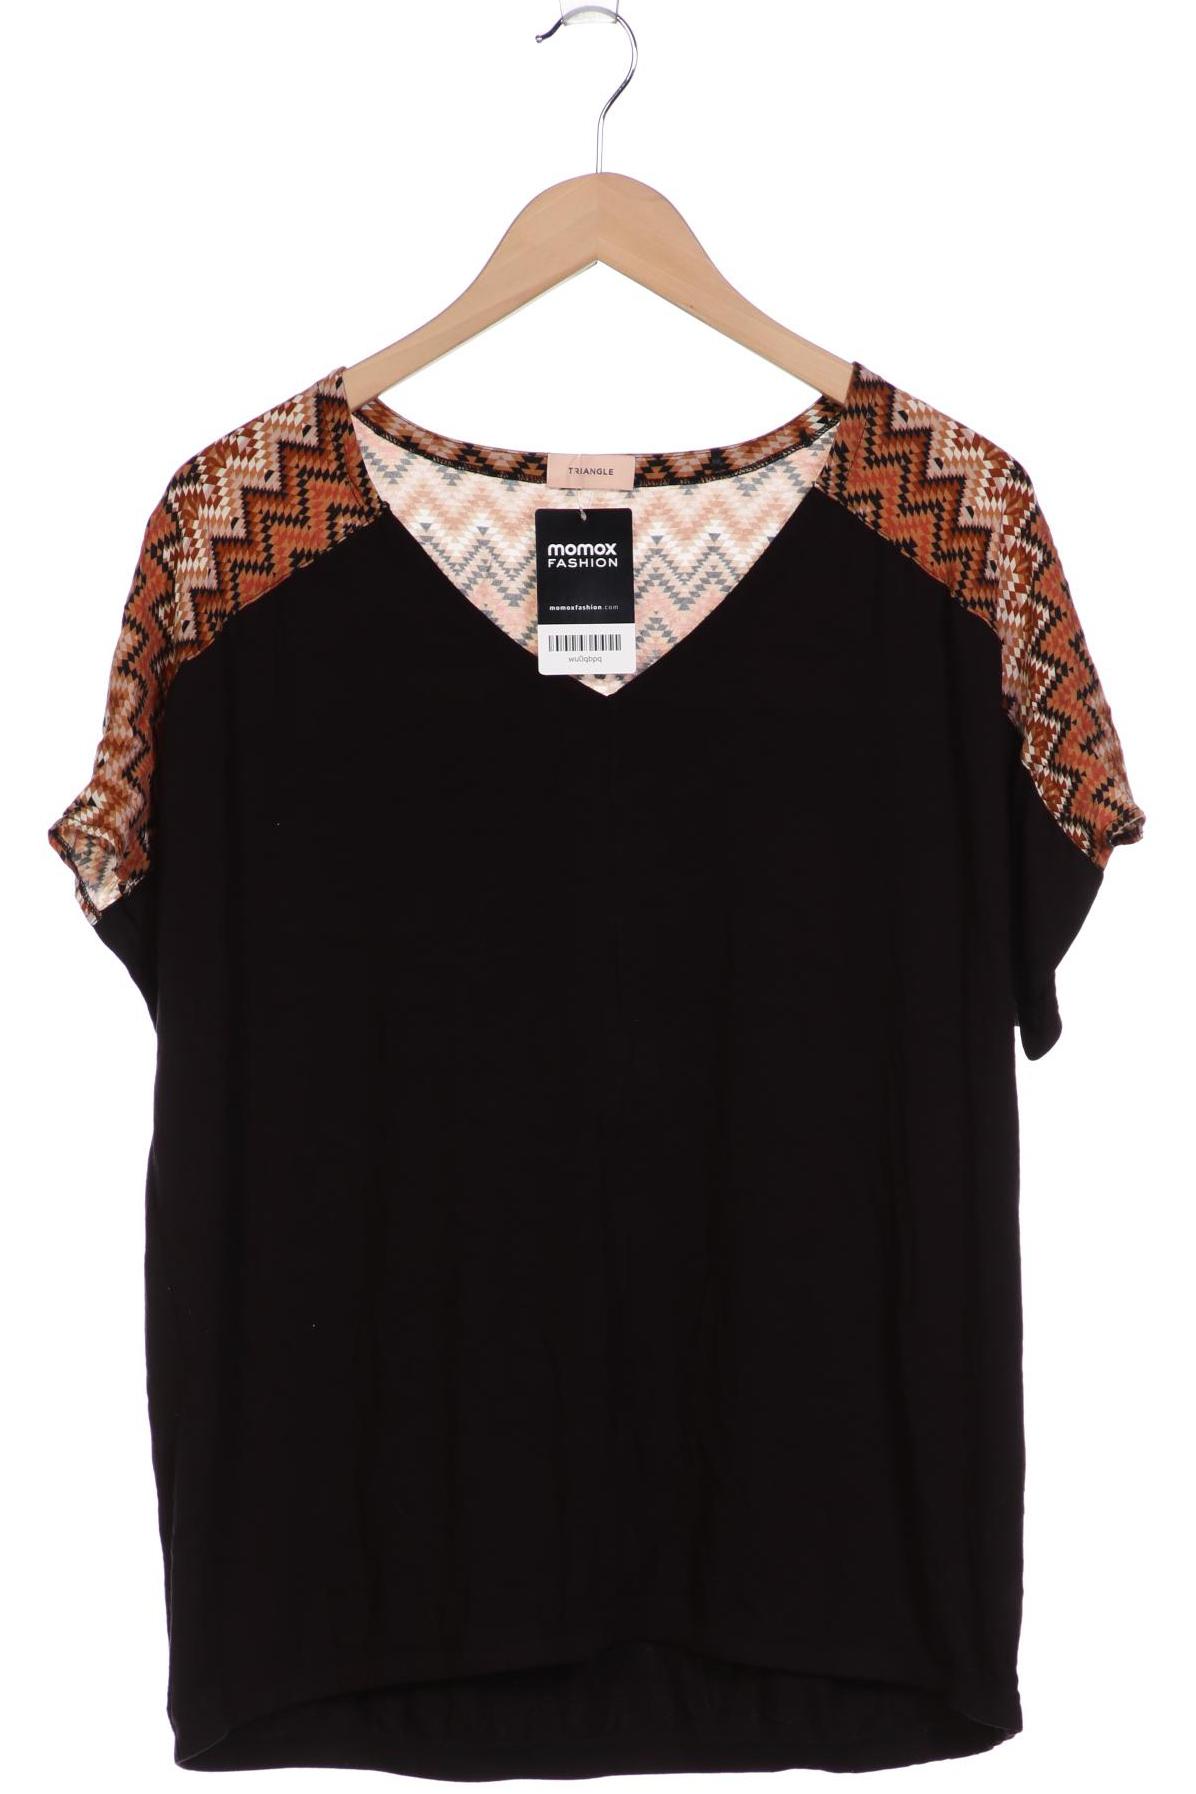 Triangle Damen T-Shirt, schwarz, Gr. 48 von Triangle